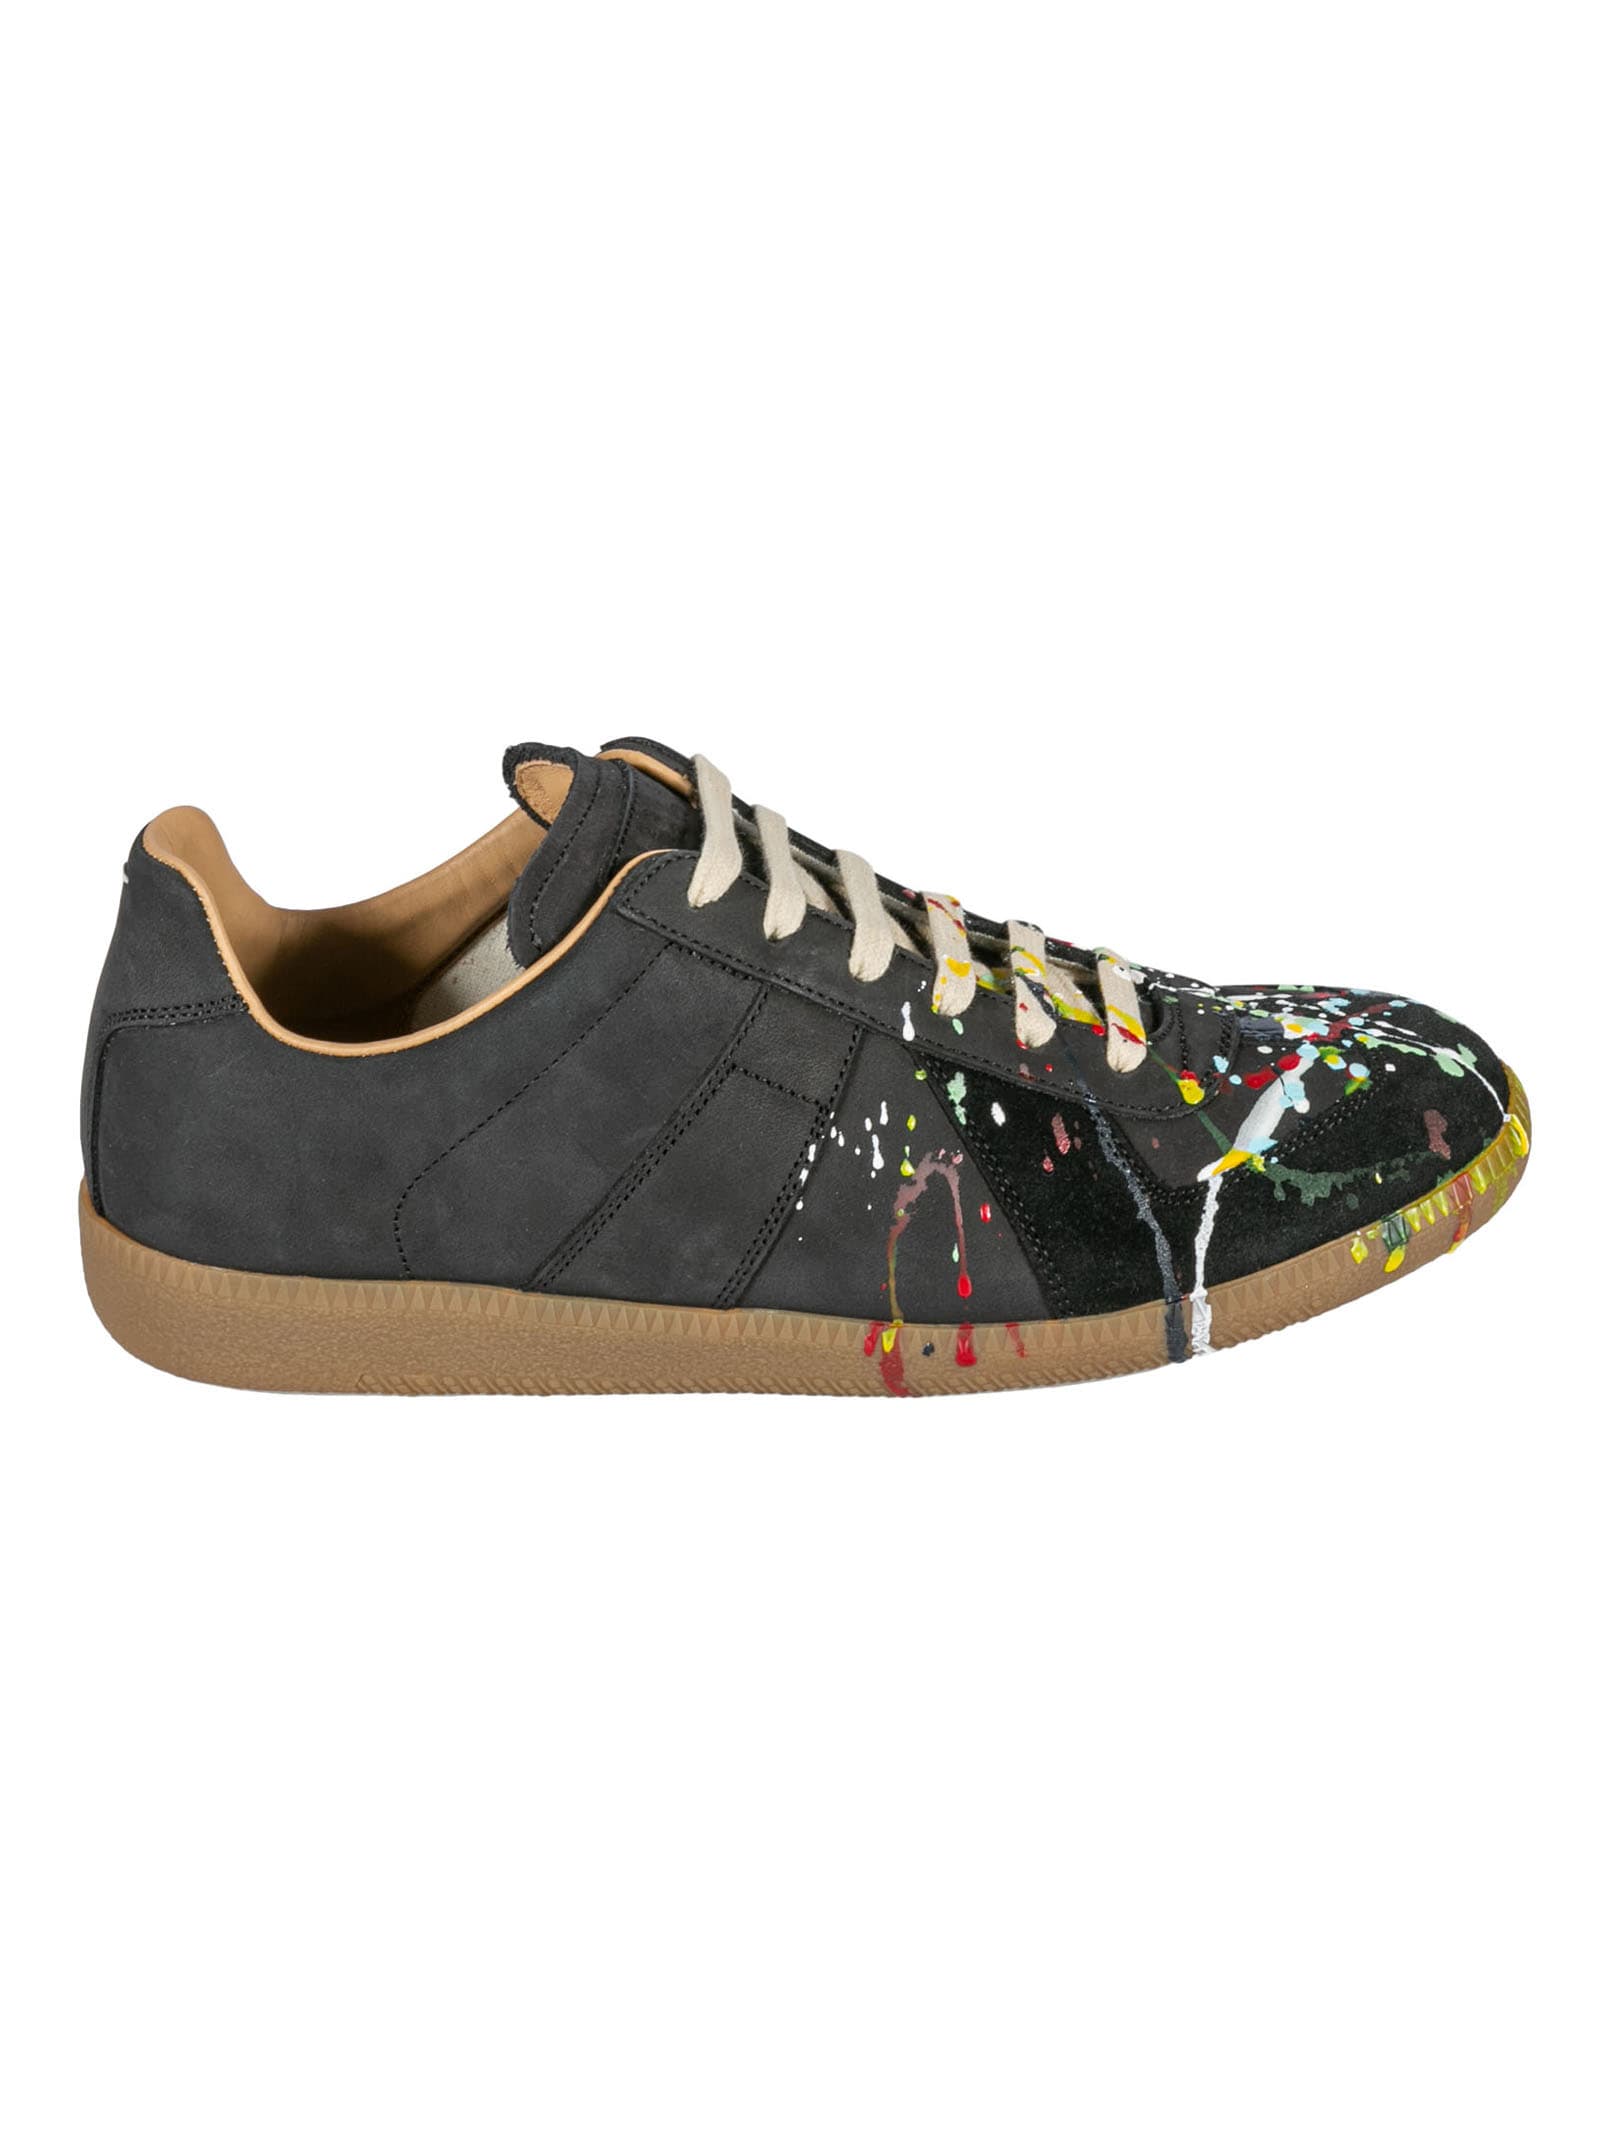 Maison Margiela Splat Paint Detail Sneakers In Dark Grey/multicolor